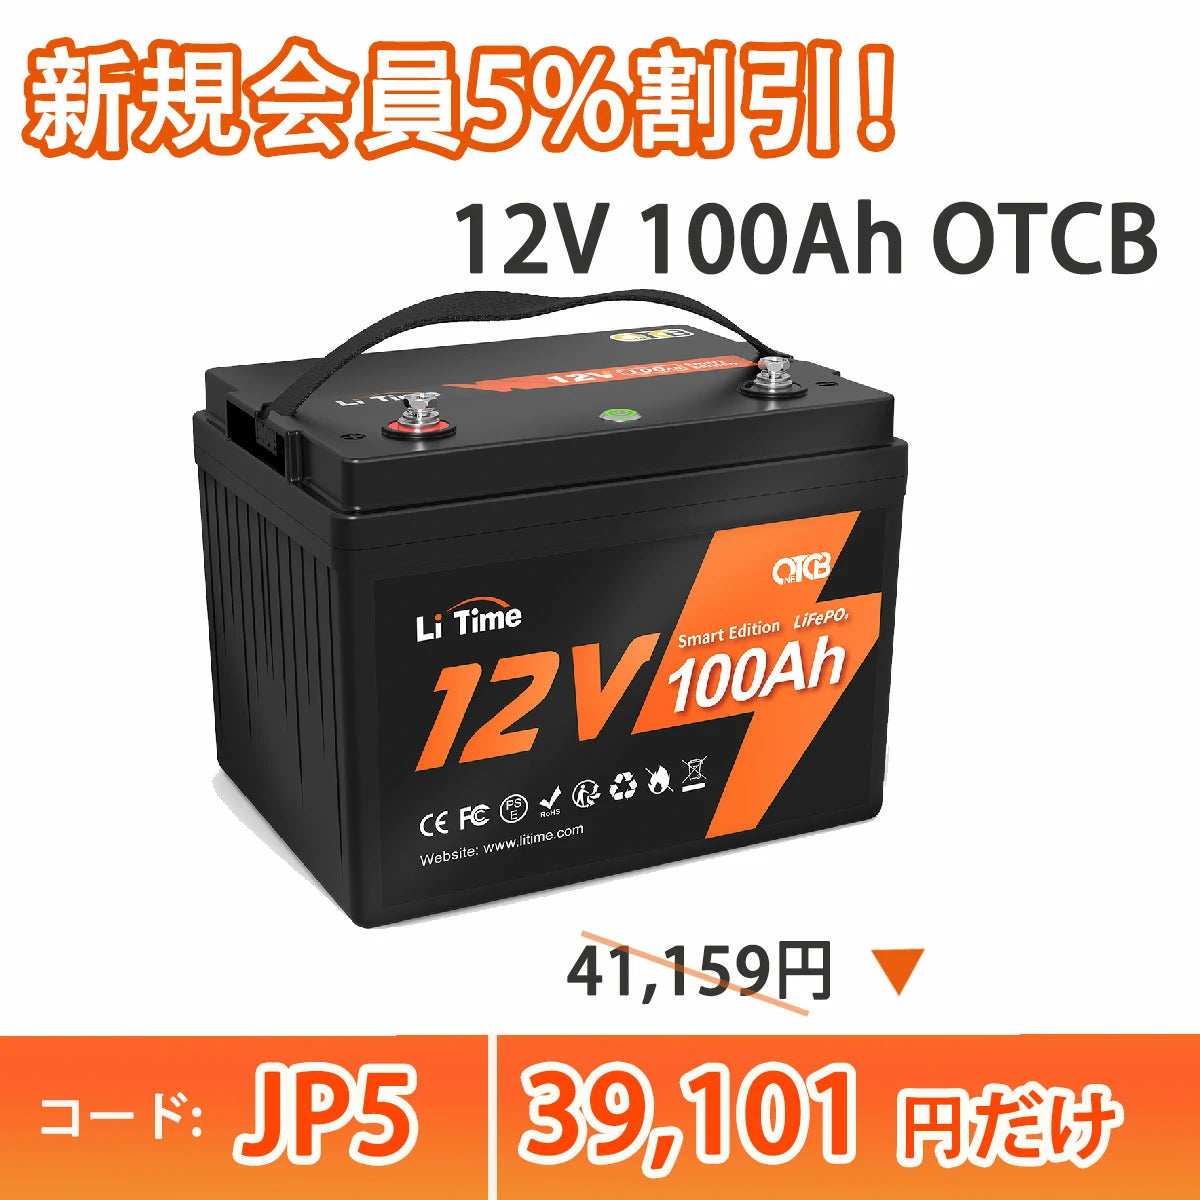 【スペシャル】LiTime 12V 100AhスマートOTCBリン酸鉄リチウムバッテリー、オン/オフスイッチ、低温遮断、 https://jp.litime.com/products/12v100ah-otcb